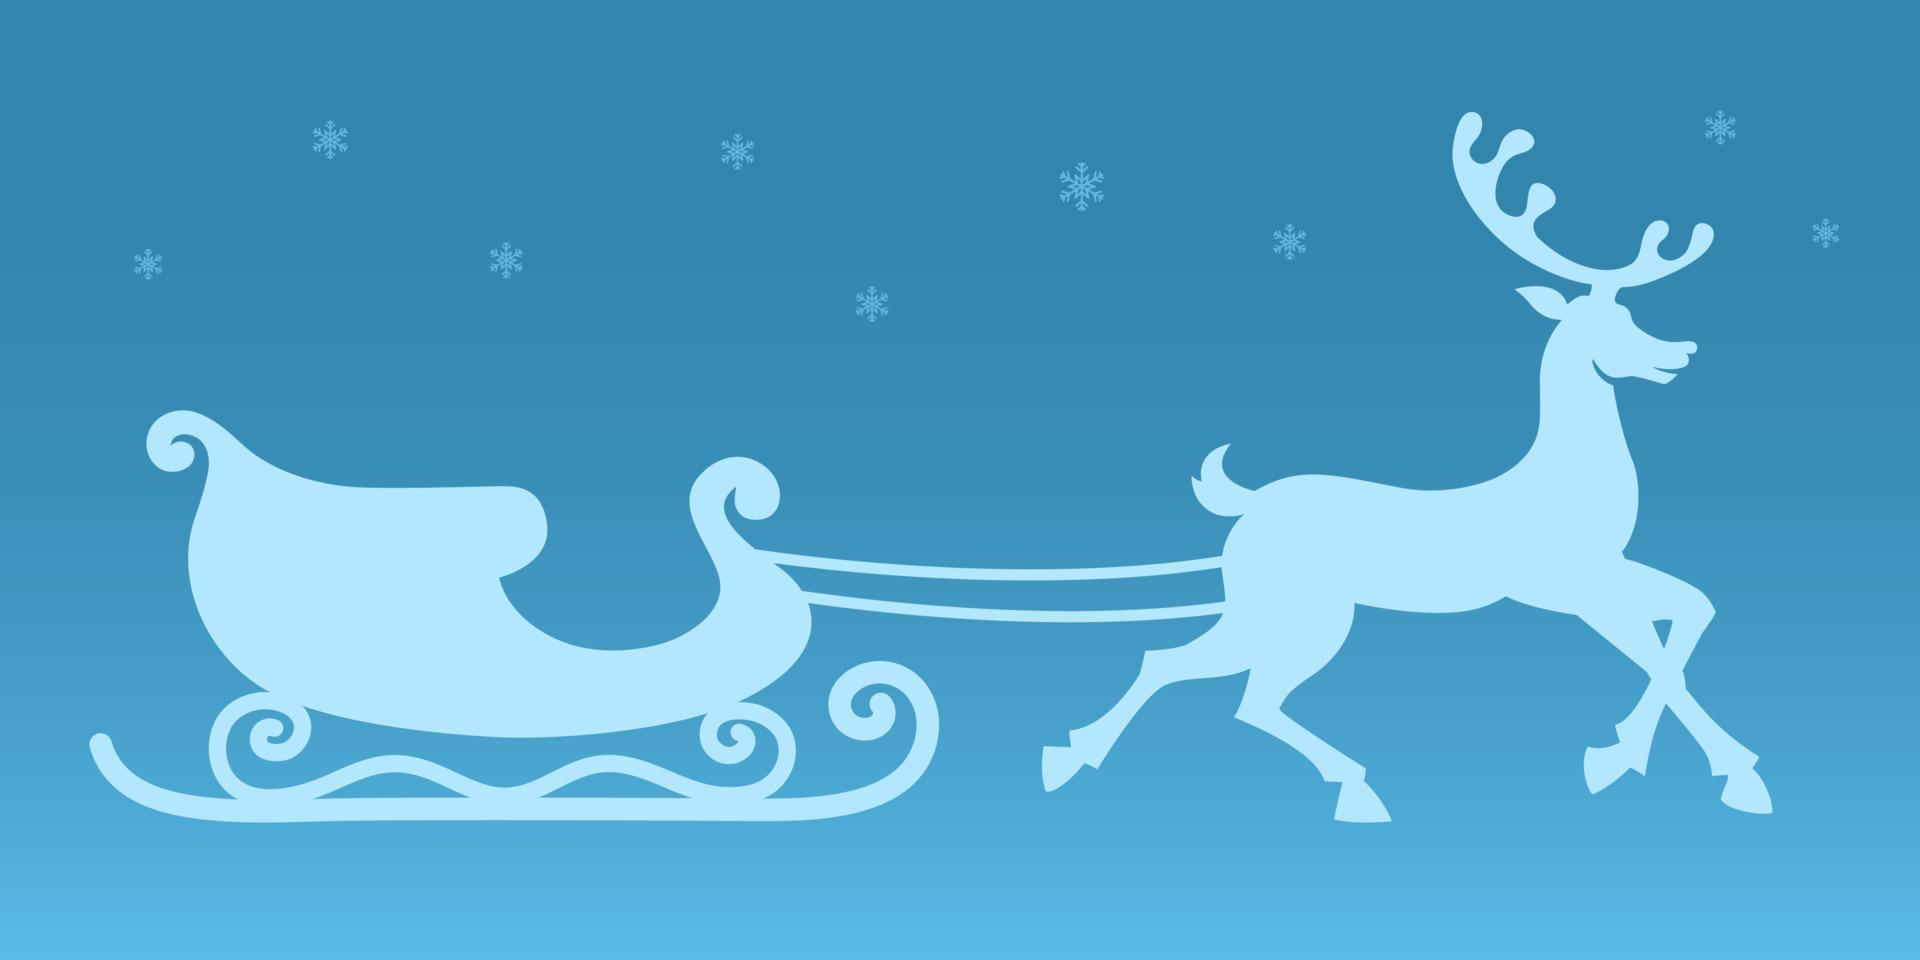 trineo y renos. silueta vectorial. pegatina navideña. trineo de santa claus y renos corriendo enjaezados. fondo azul con copos de nieve. ilustración de navidad para decoraciones vector